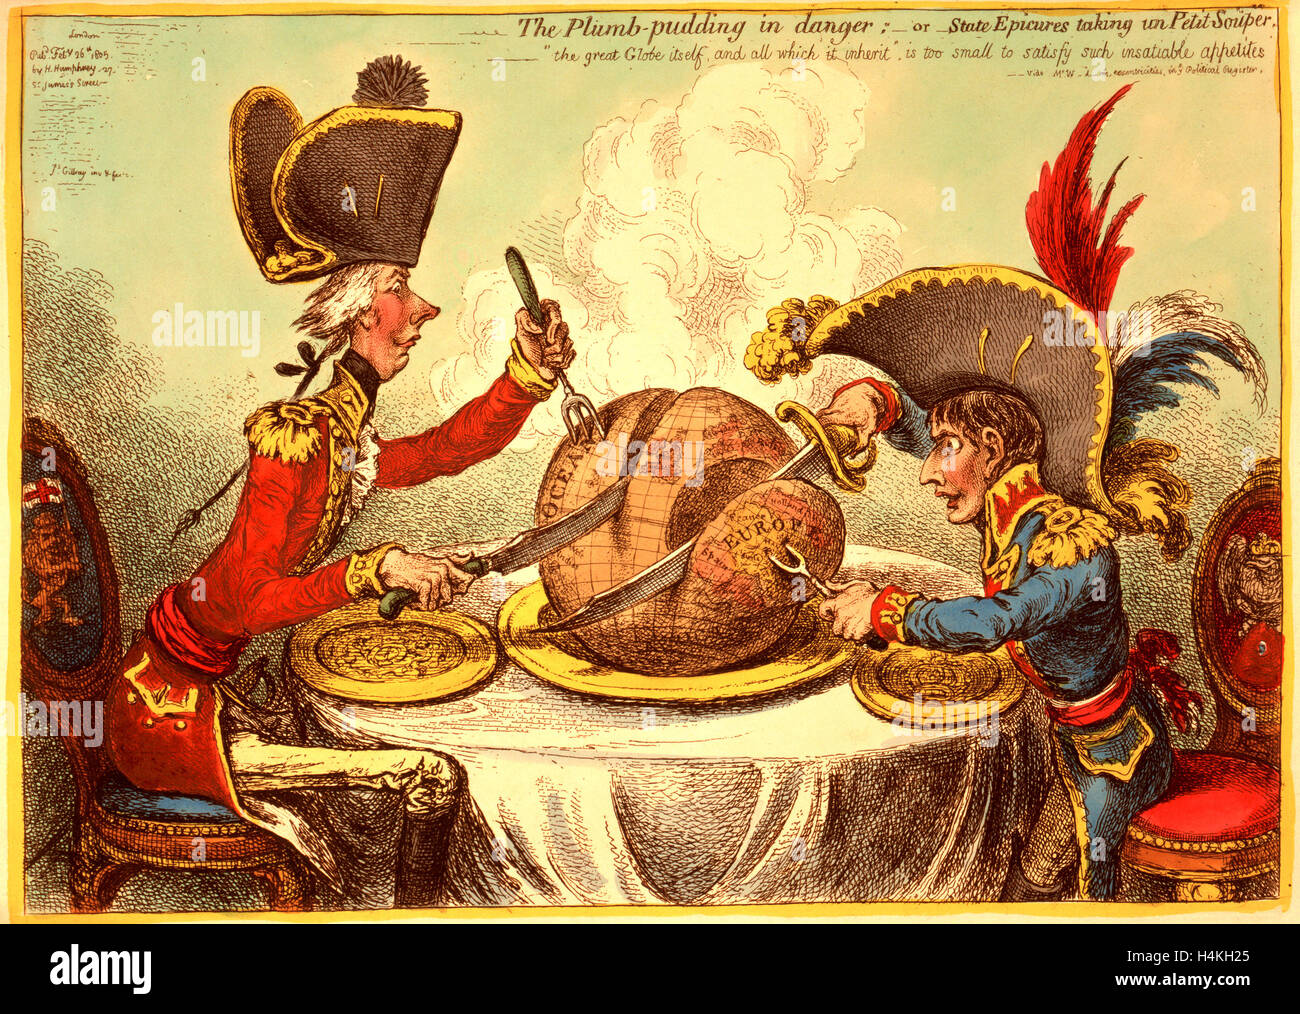 Le boudin d'aplomb en danger, ou état, jouisseur de prendre un petit souper, William Pitt, portant un uniforme régimentaire et hat Banque D'Images